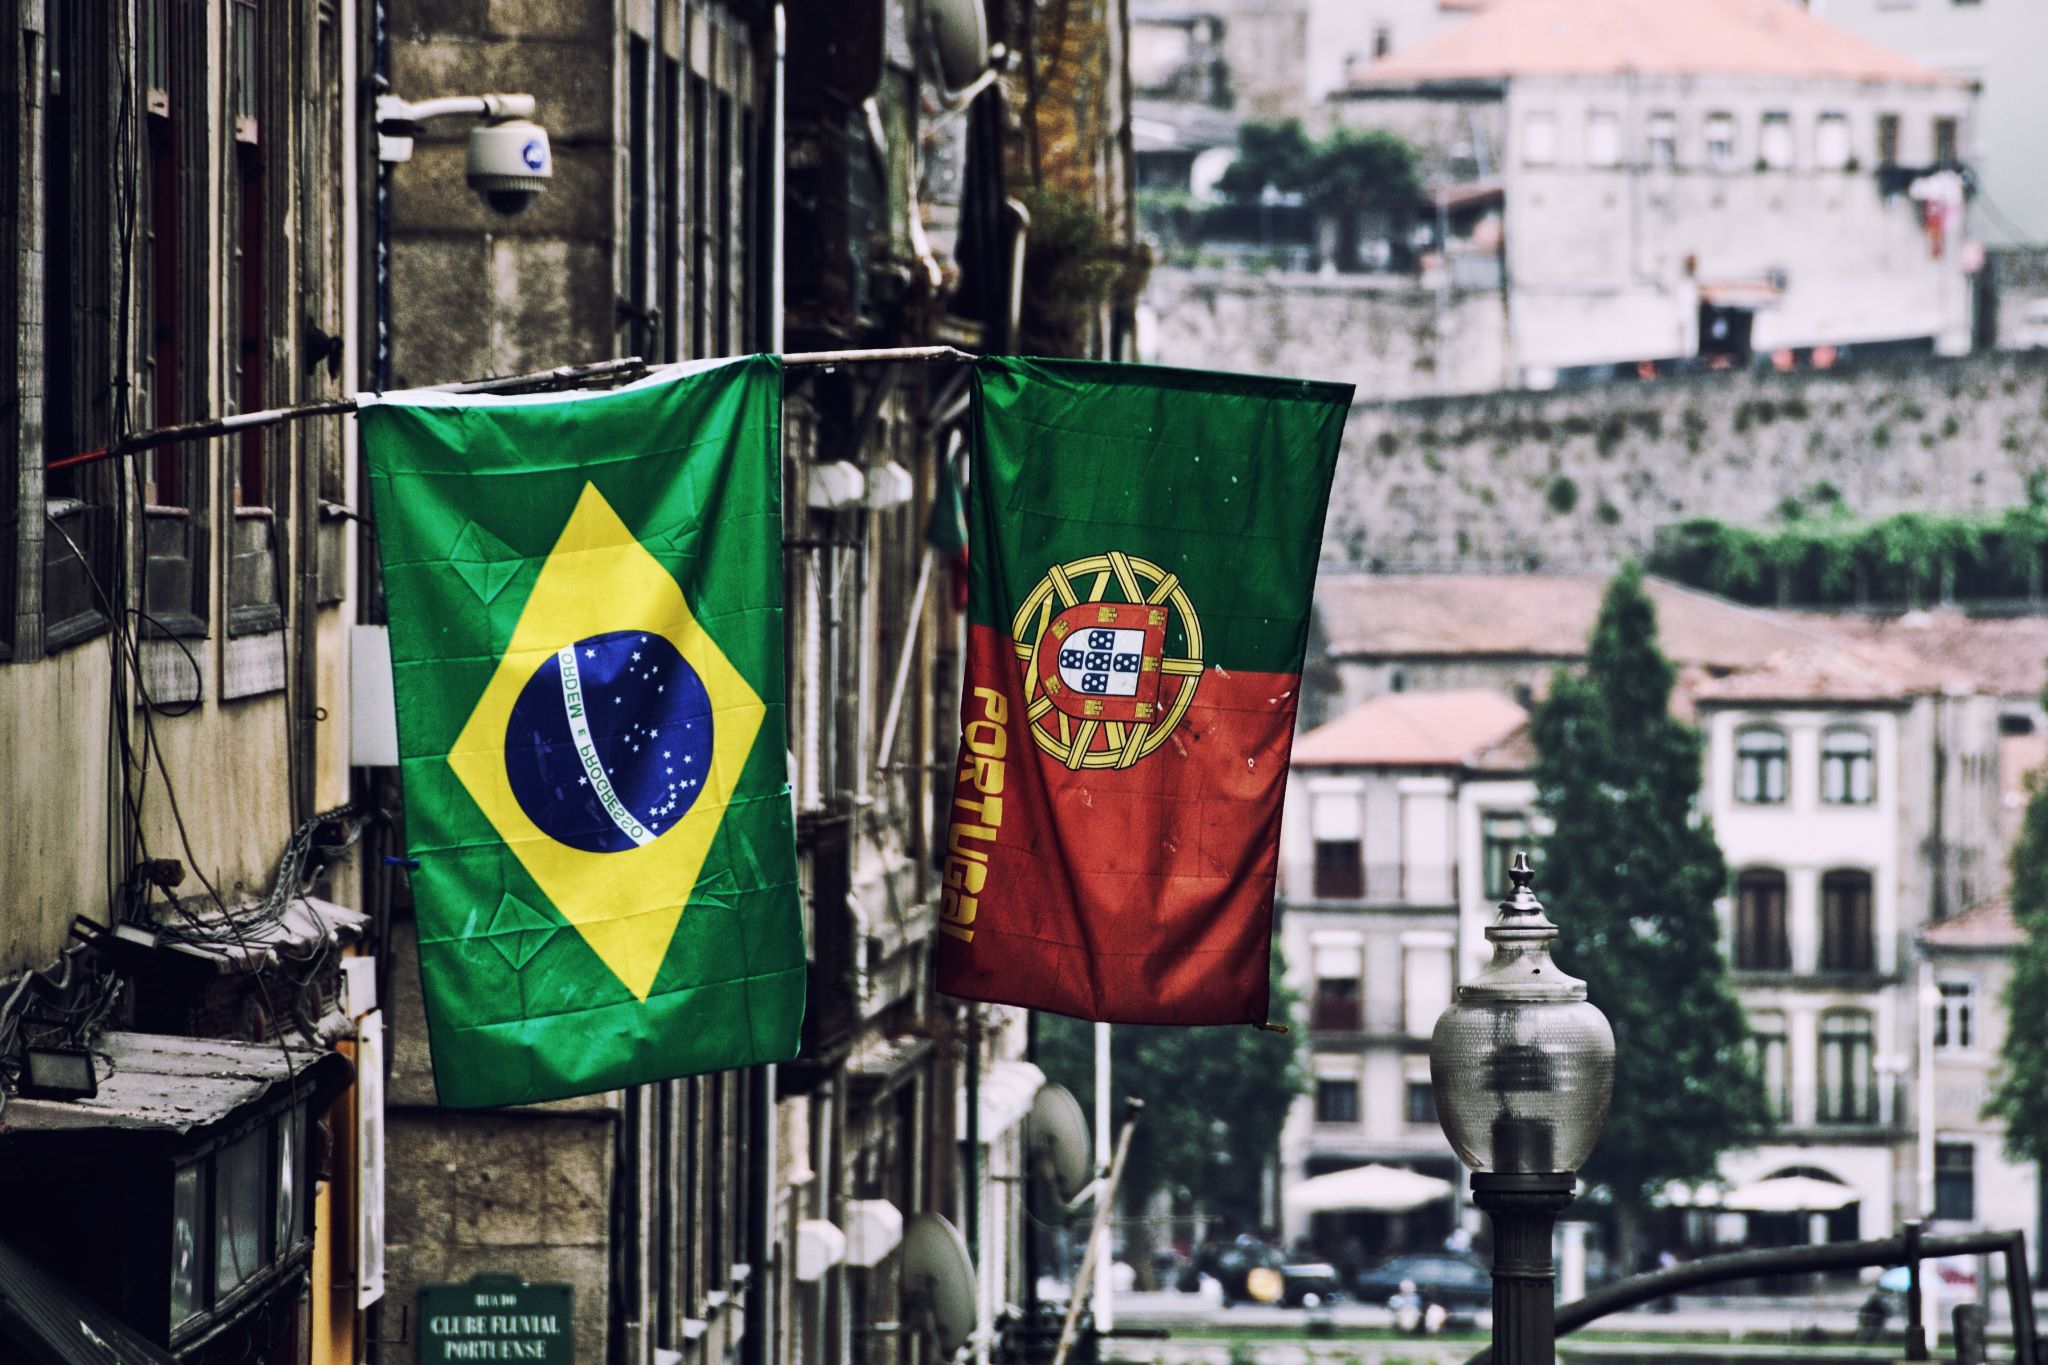 Francisco - Porto,: Se procuras traduzir os teus documentos de